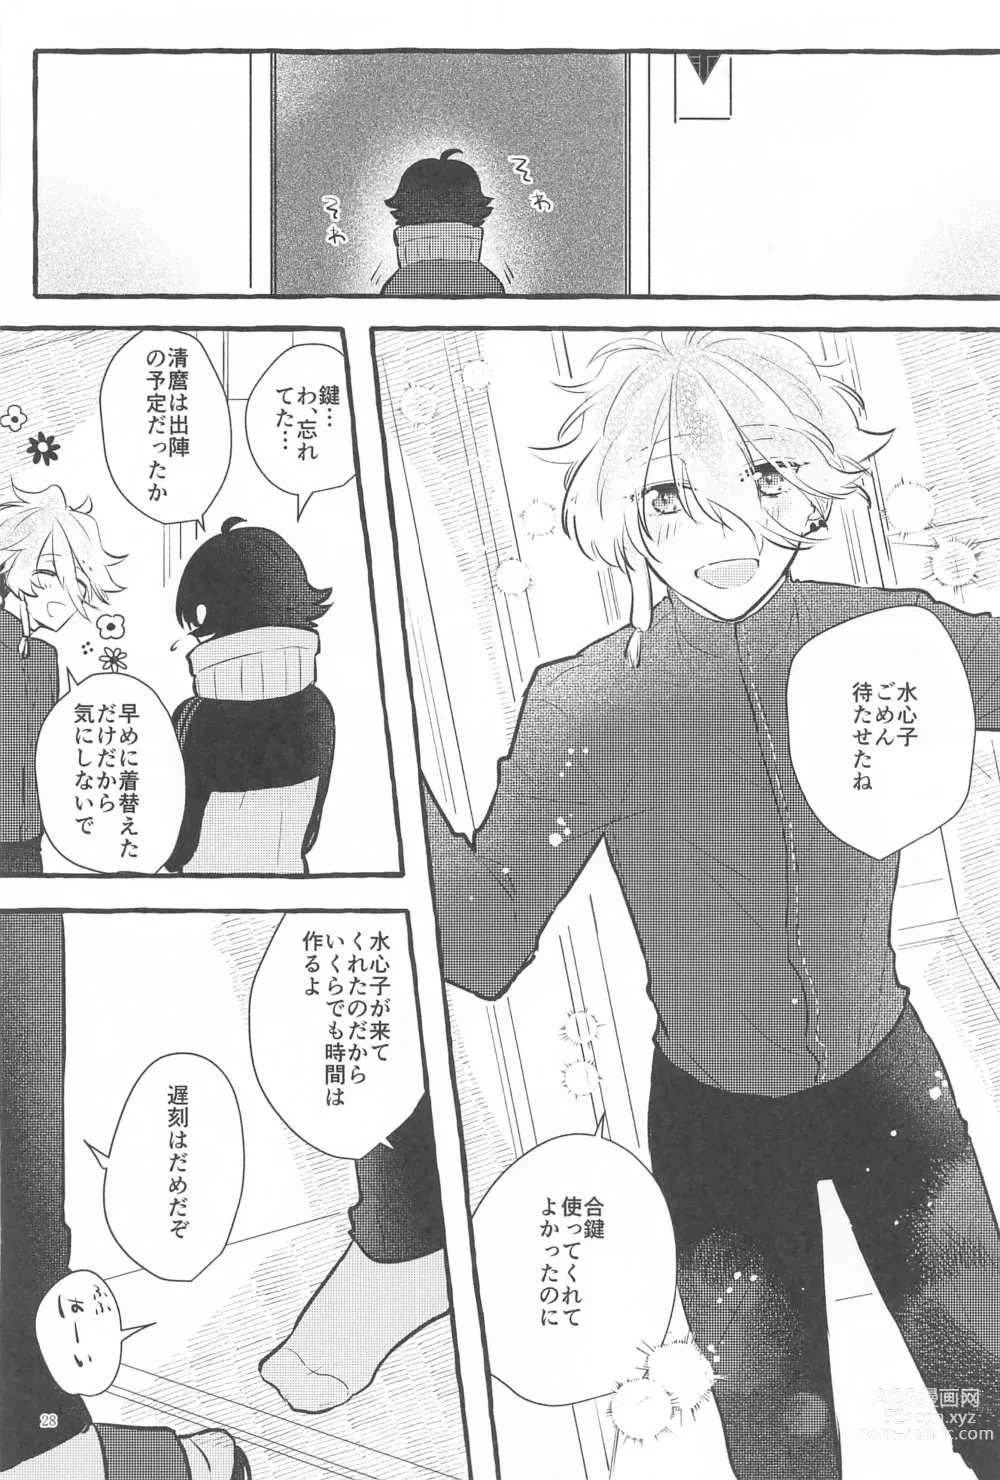 Page 27 of doujinshi Kanete kara no Setsubou de